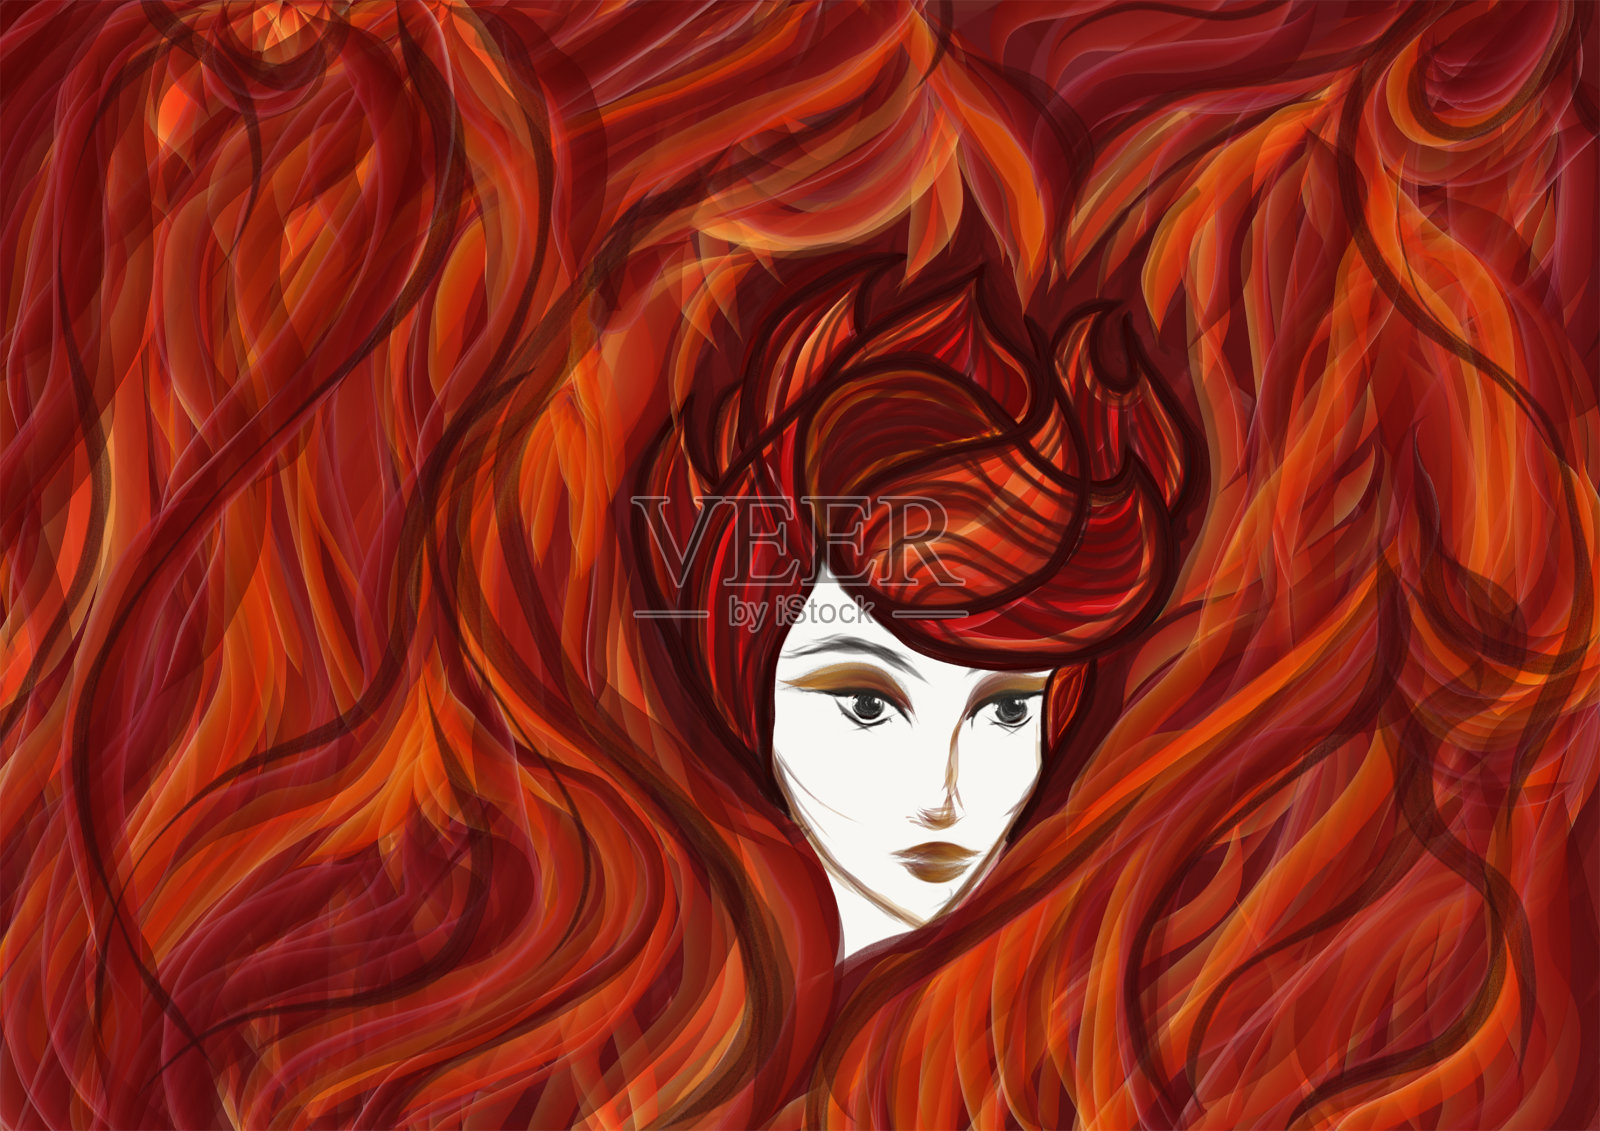 一个被火焰包围的红发女人的肖像插画图片素材